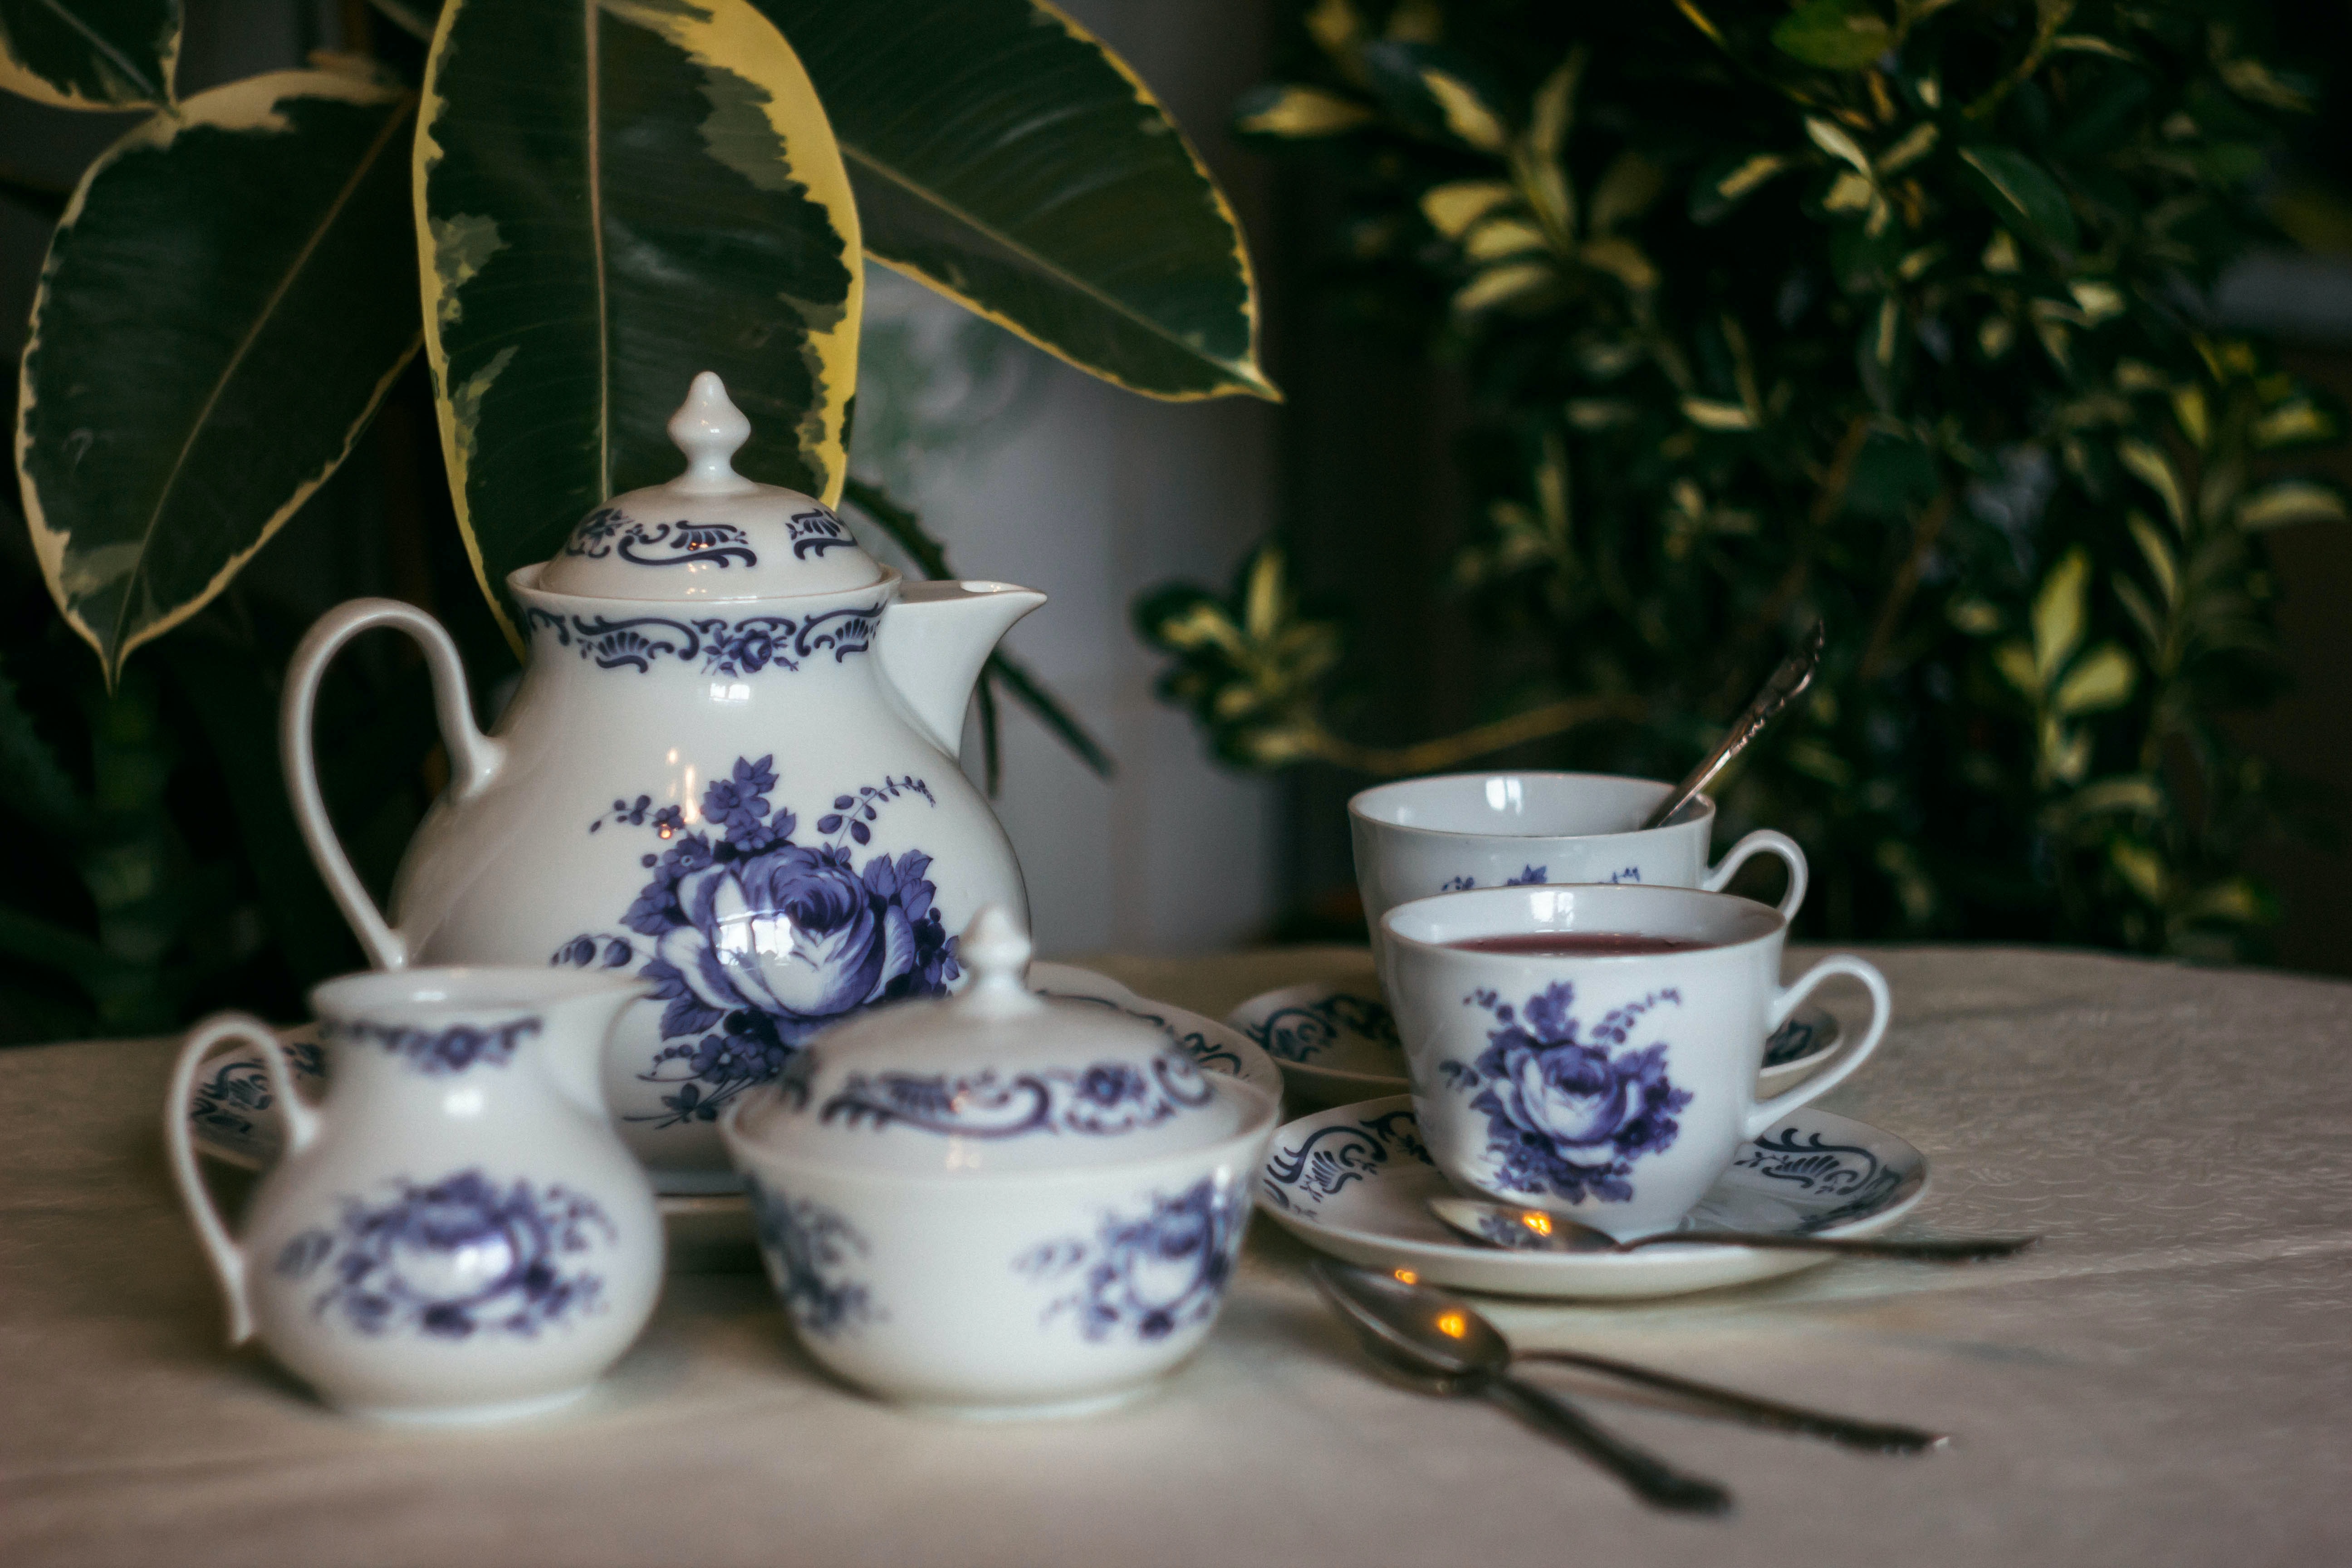 A tea set with blue floral designs.